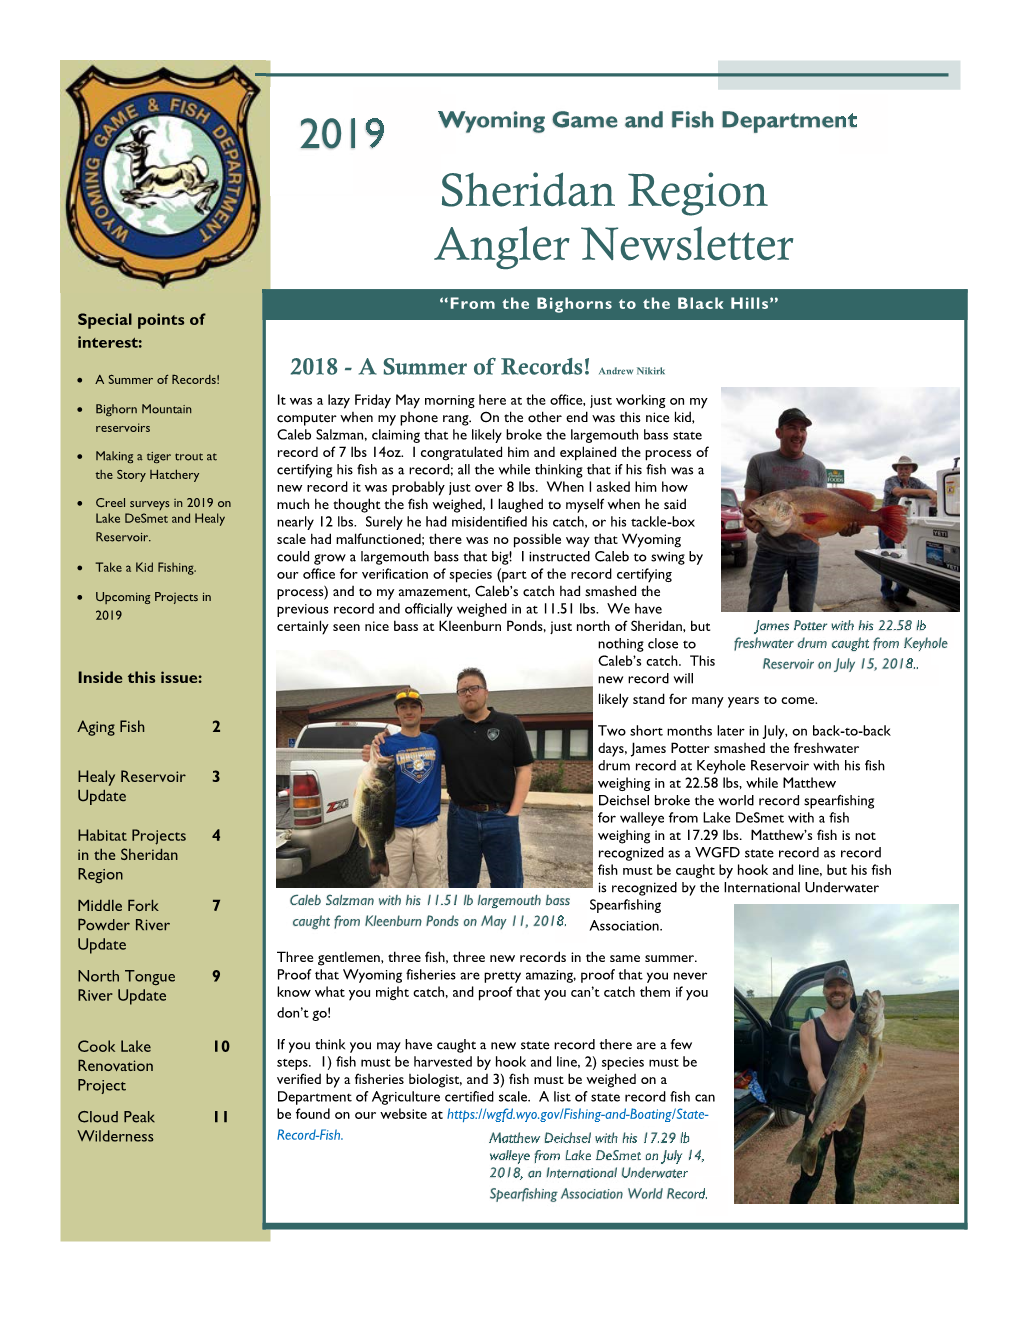 2019 Sheridan Region Angler Newsletter